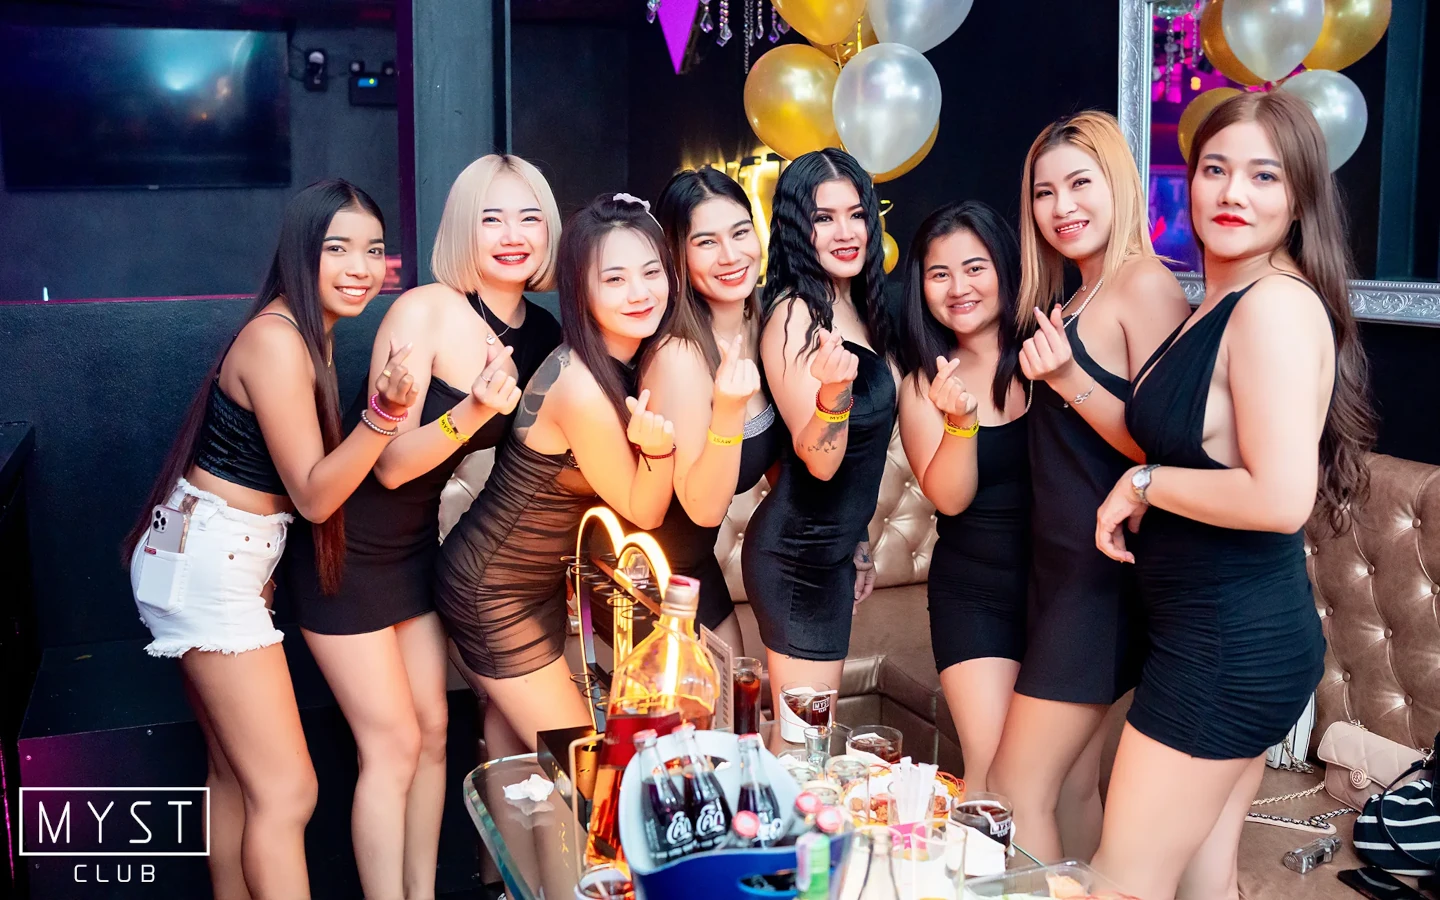 Girls enjoying drinks at Myst Club Pattaya.